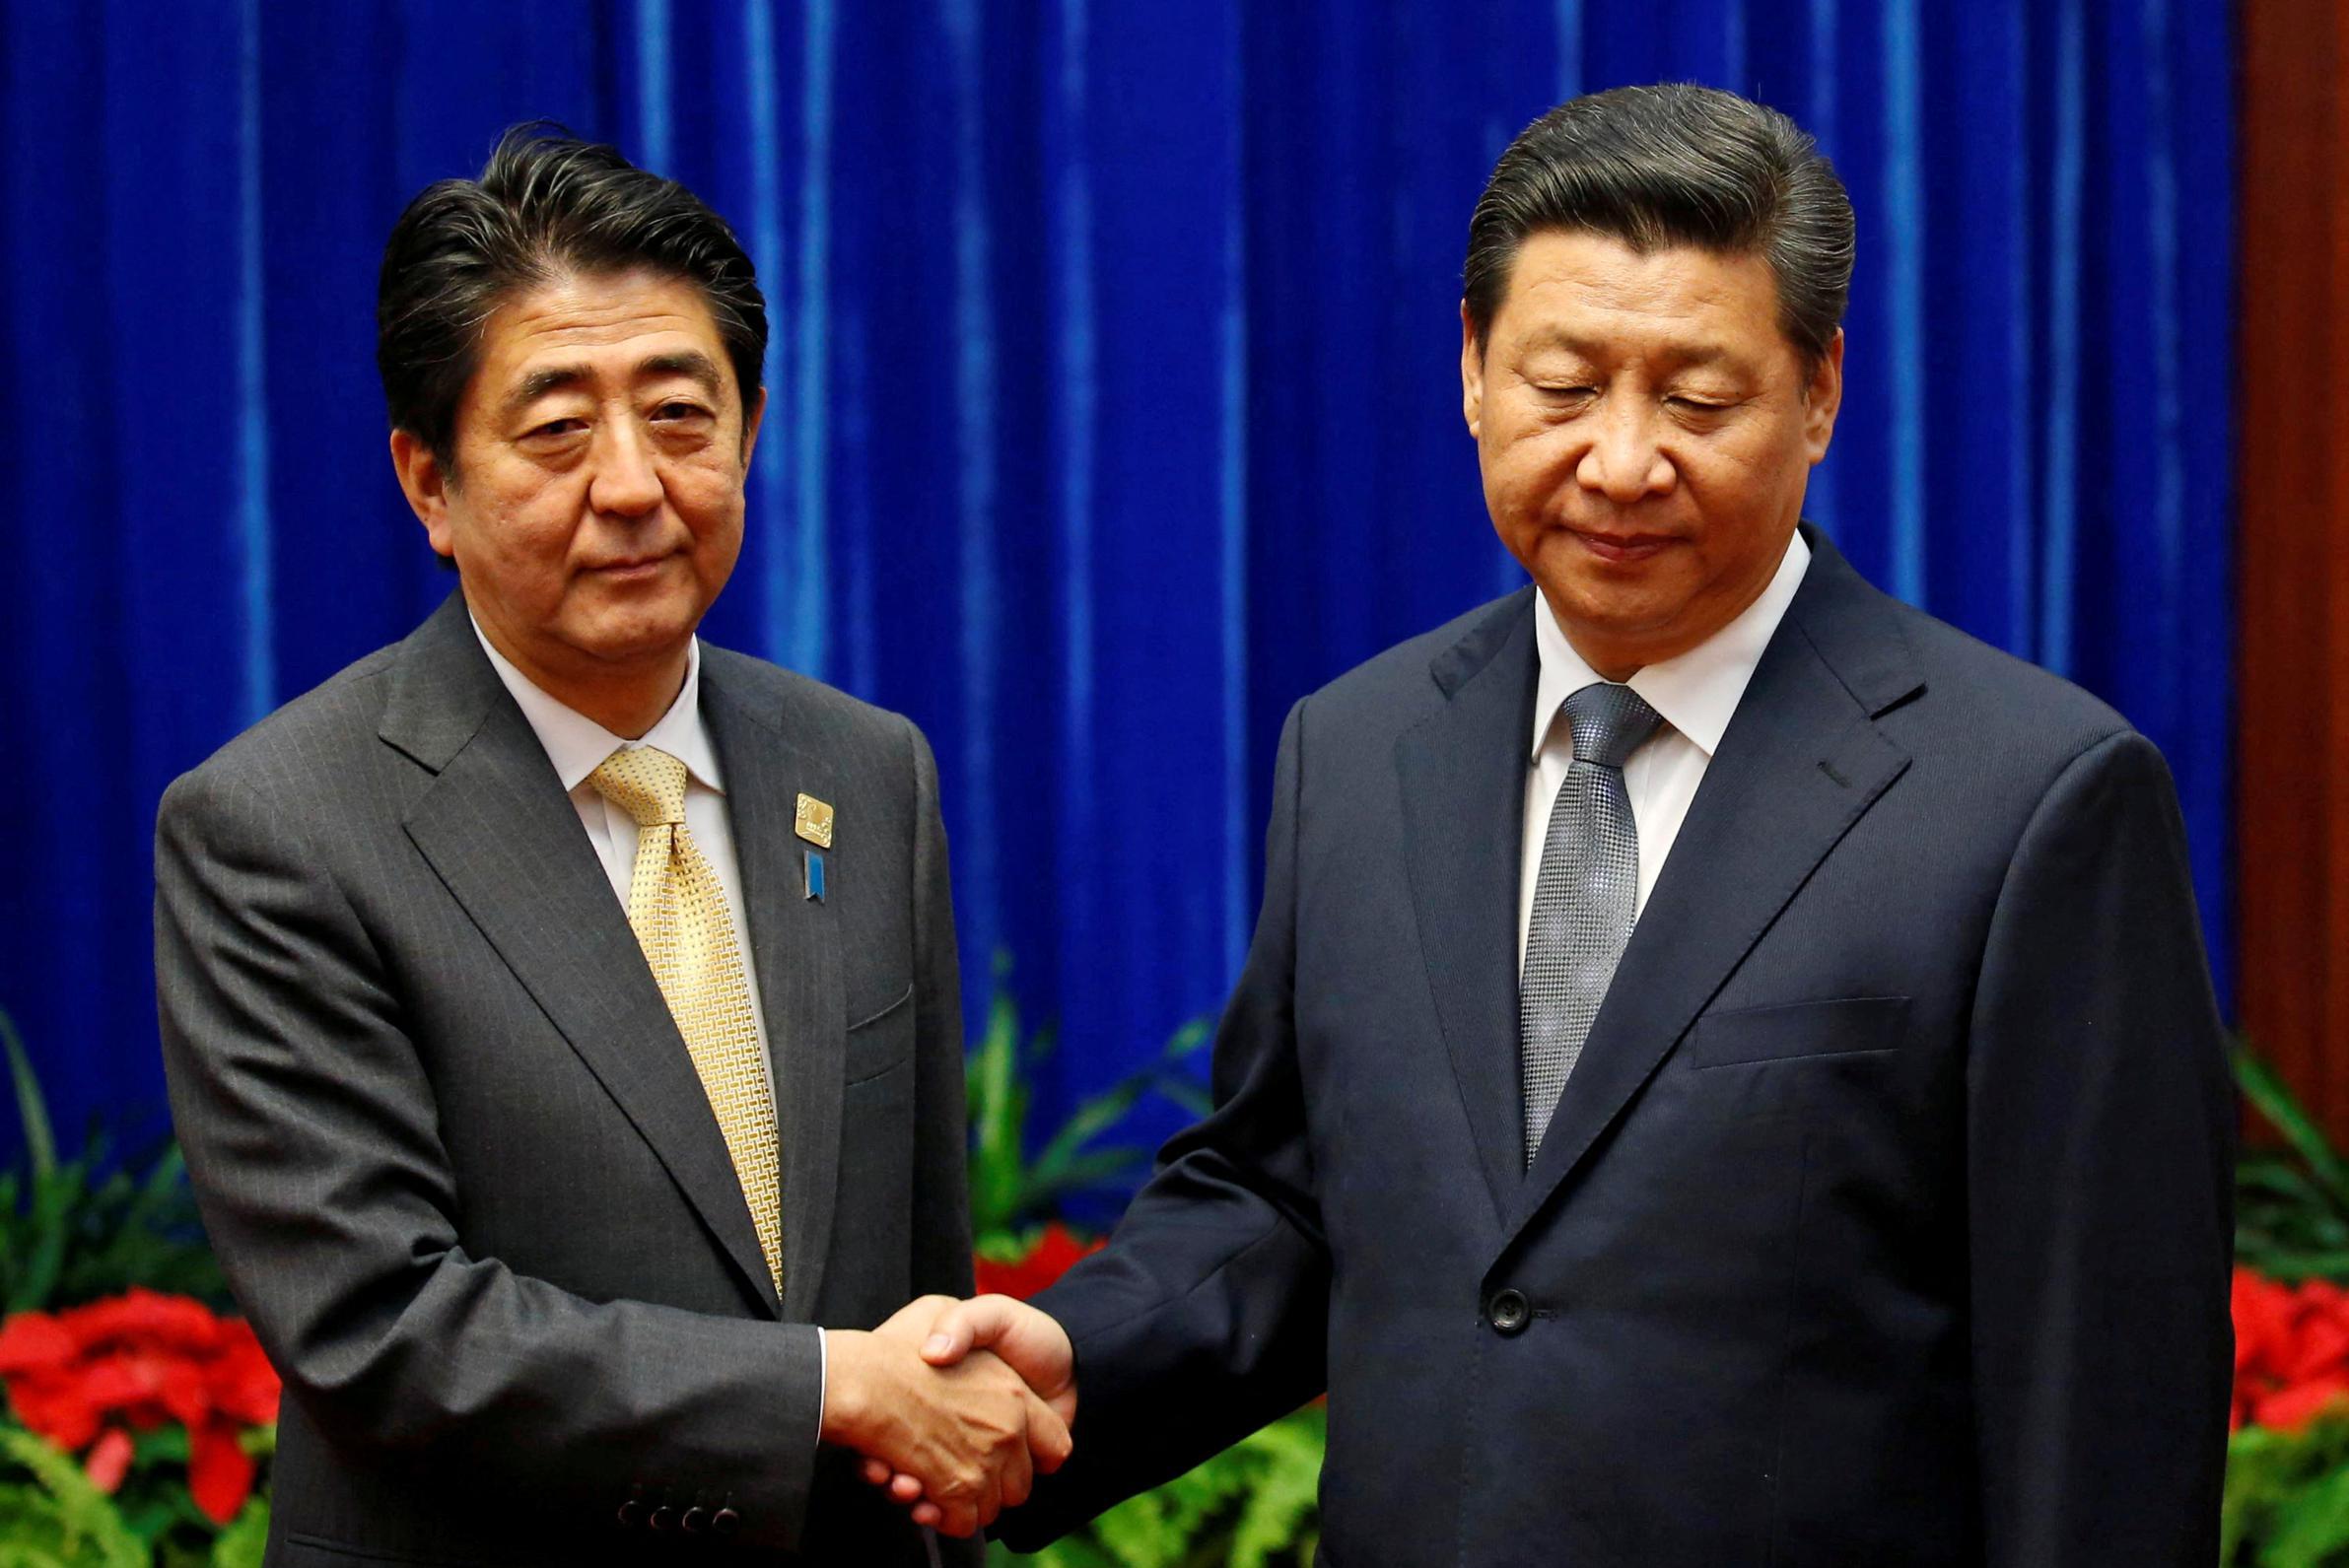 Il presidente cinese è “molto triste” per la morte improvvisa di Shinzo Abe, anche se sui social sembra molto diverso